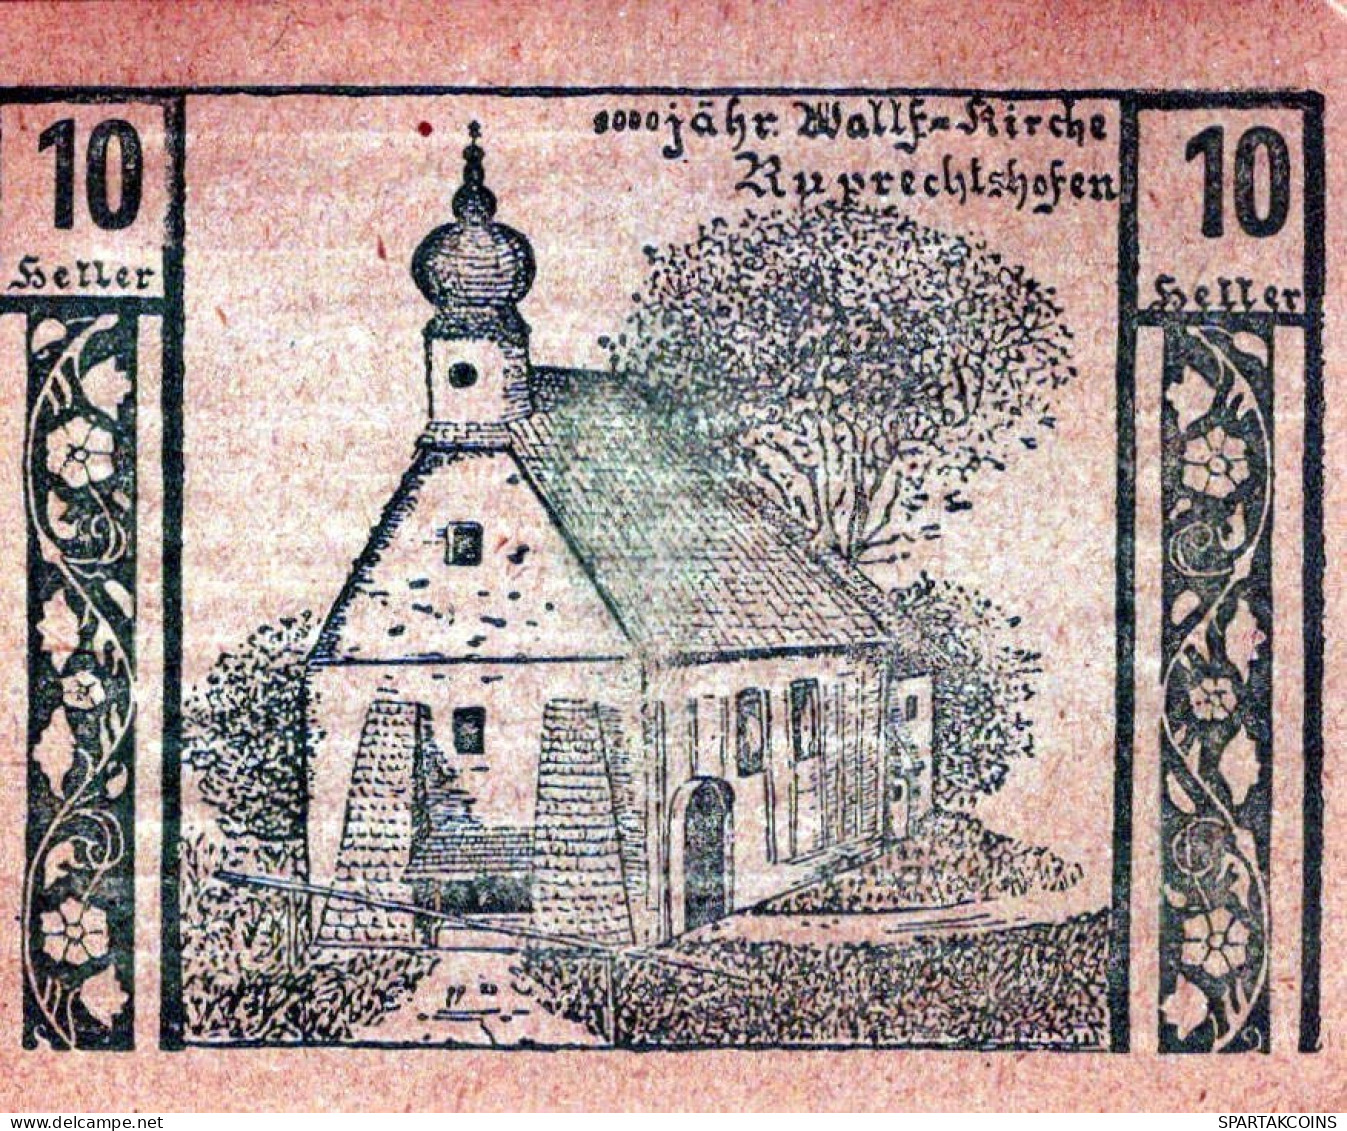 10 HELLER 1920 NIEDERNEUKIRCHEN IM TRAUNKREIS Oberösterreich Österreich #PE223 - [11] Local Banknote Issues